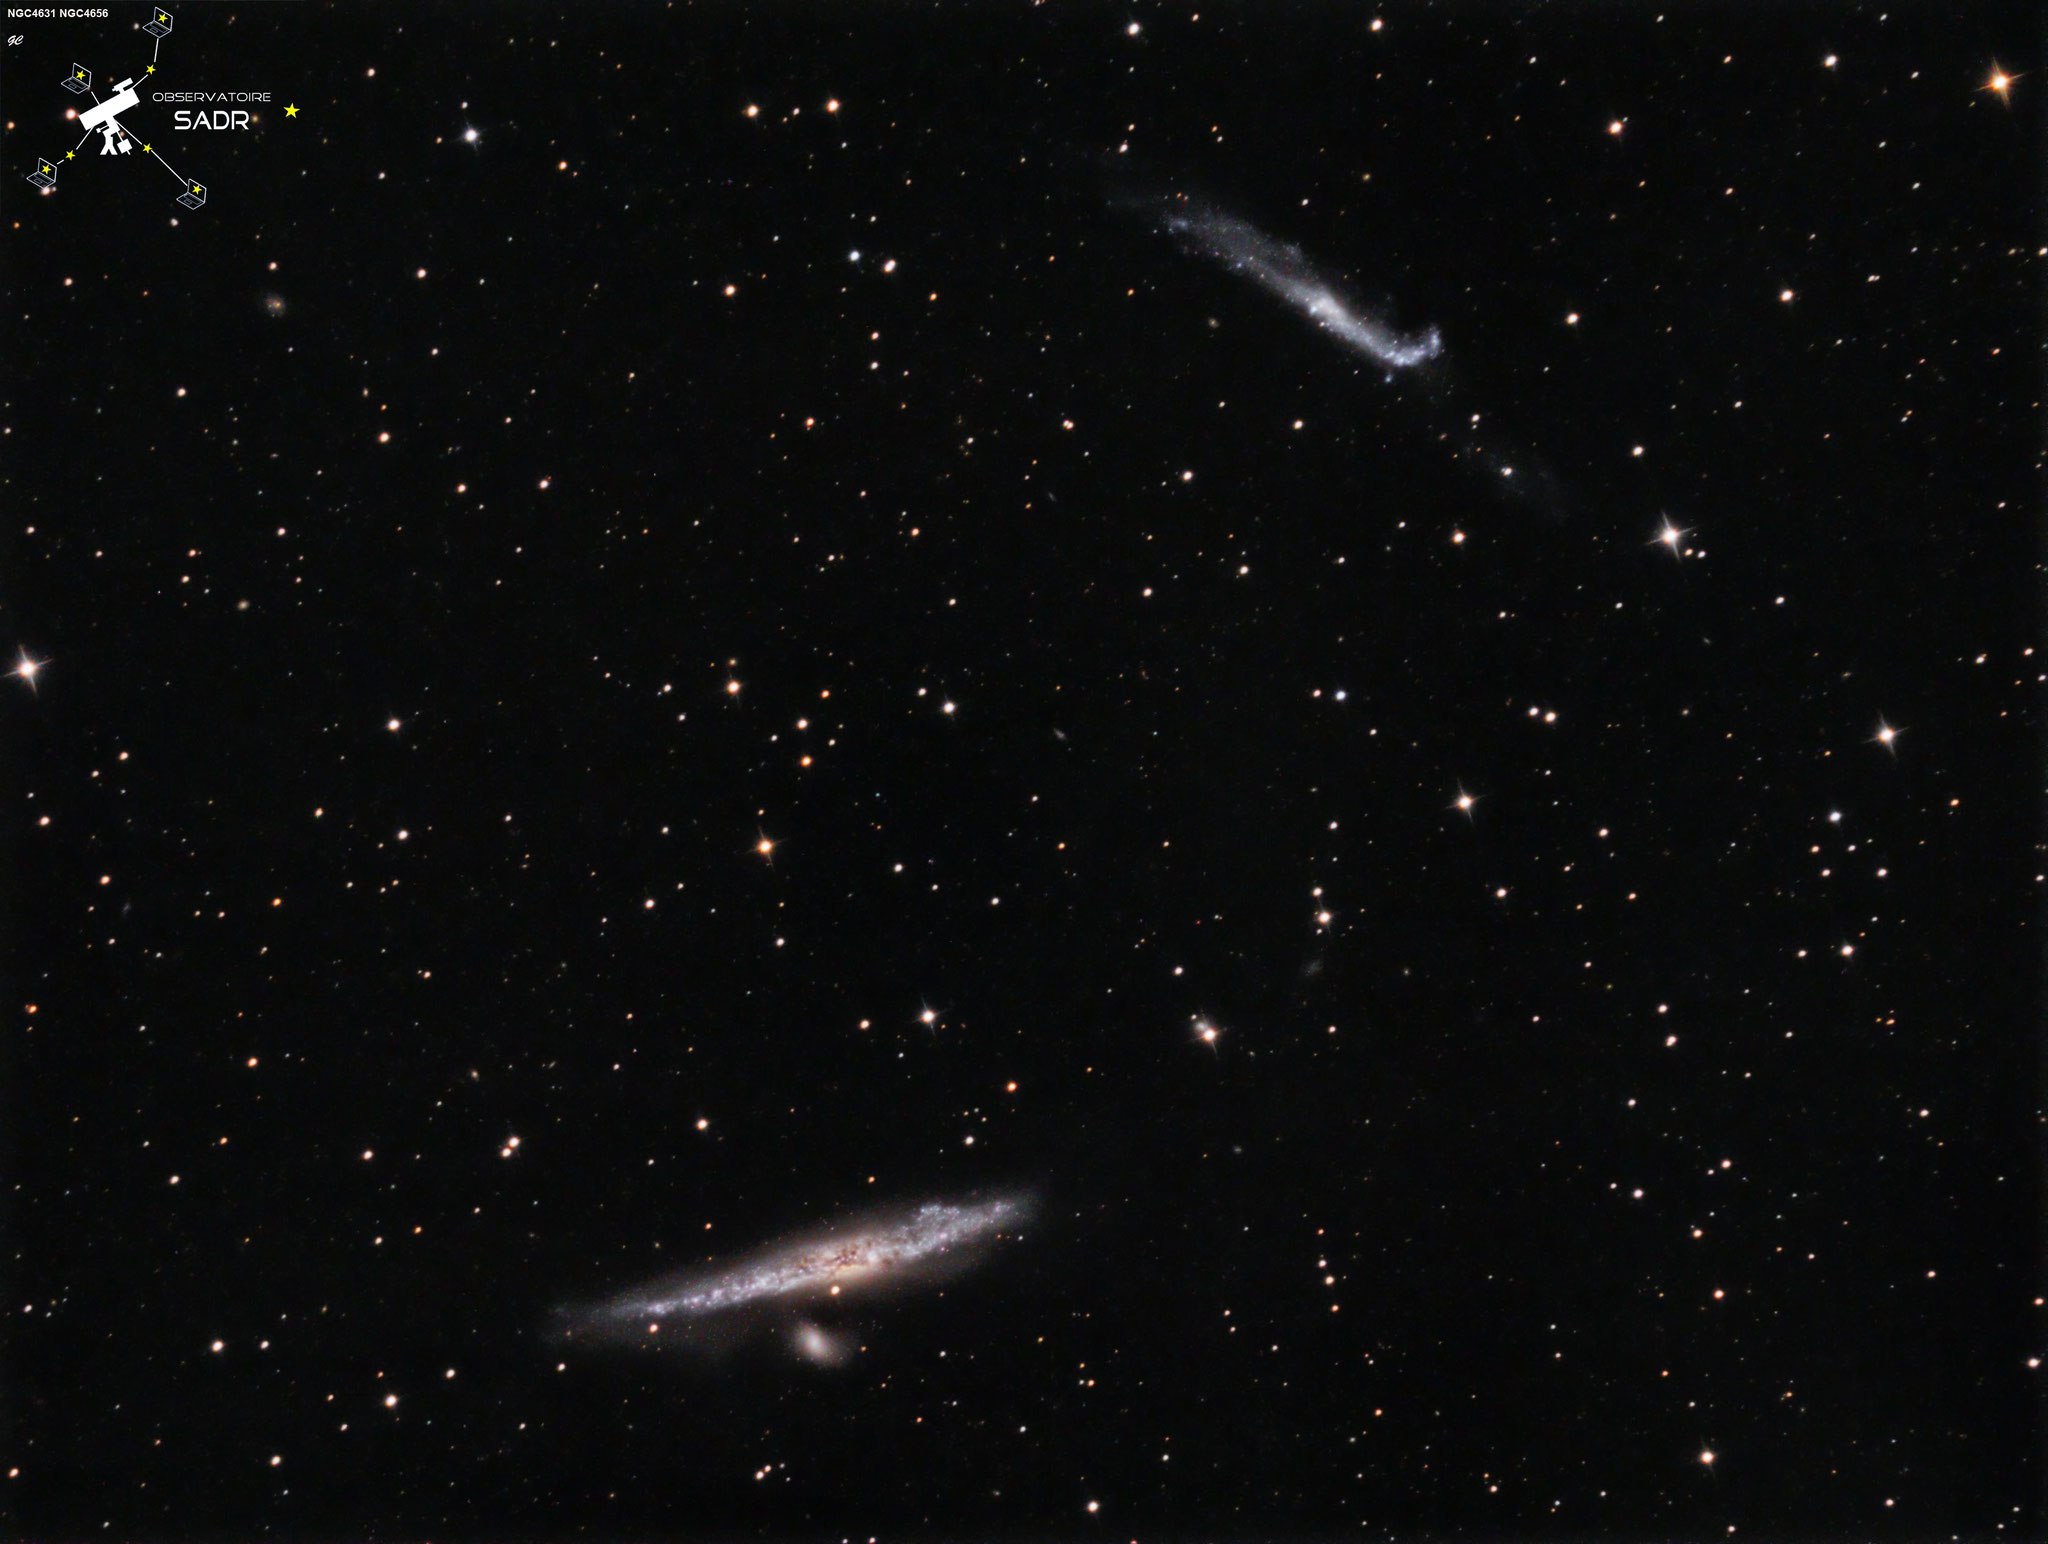 NGC4631 et NGC4656, Ha (7 x 10min), L(12 x 5min), RVB (7 x 2min), mai 2017, Gilles